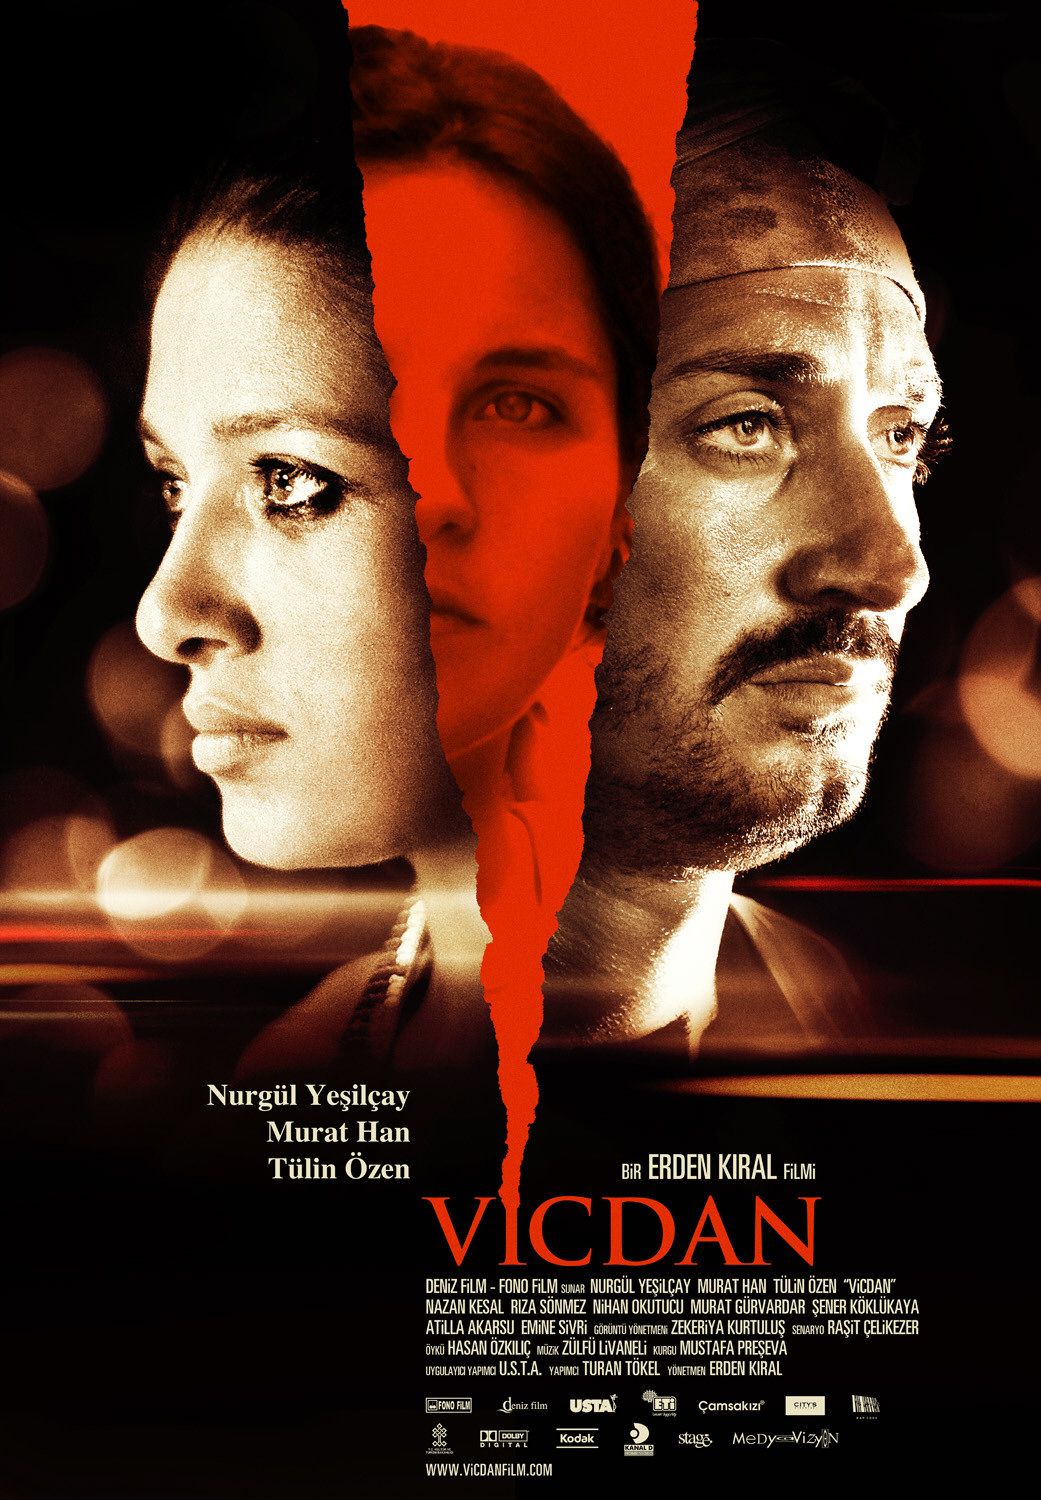 Vicdan movie